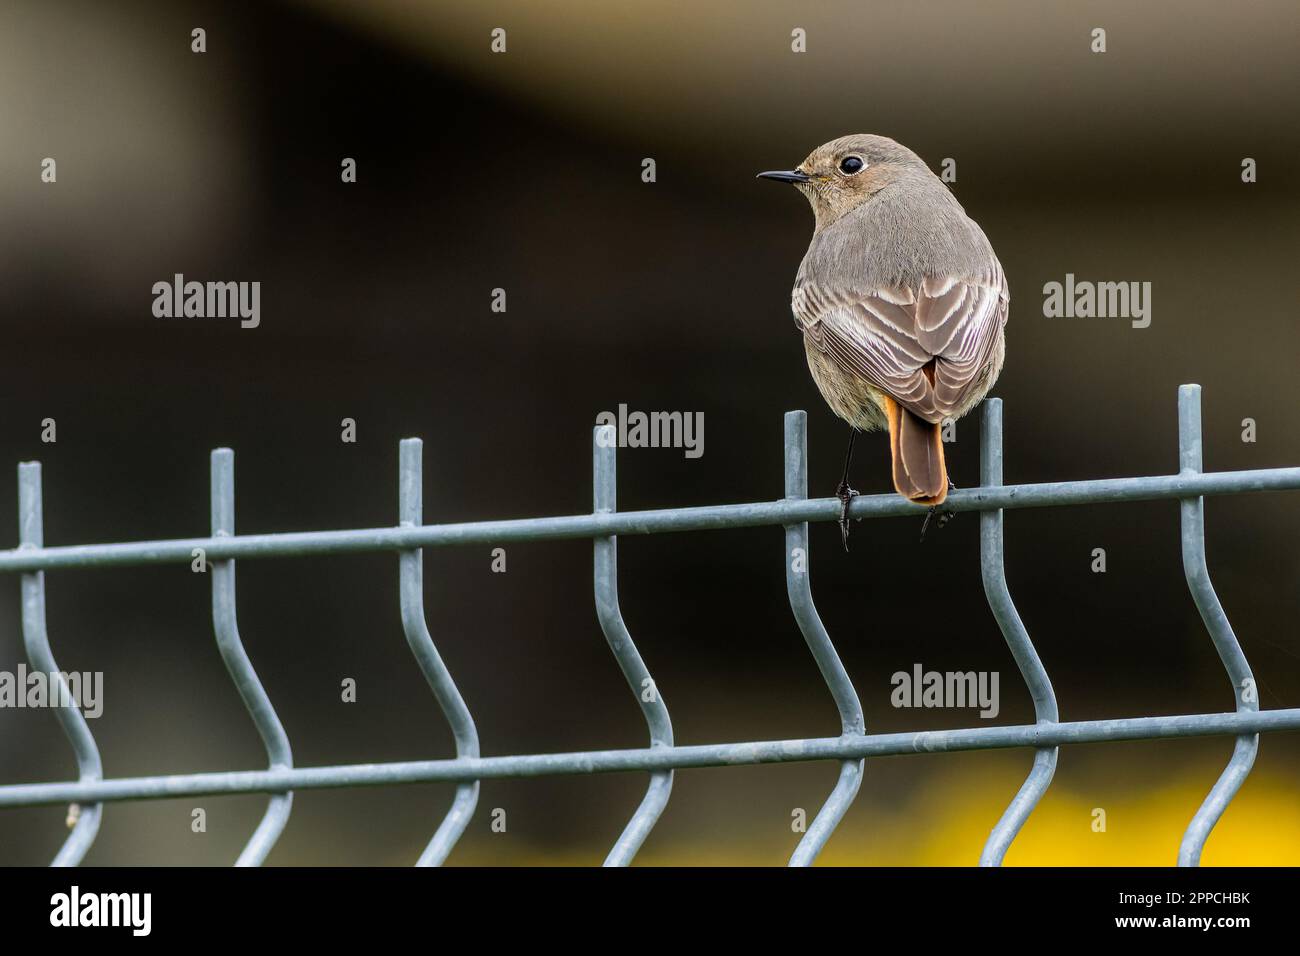 Der Rotstart, ein kleiner singvogel, der auf einem grauen Metallzaun sitzt. Unscharfer dunkler Hintergrund. Stockfoto